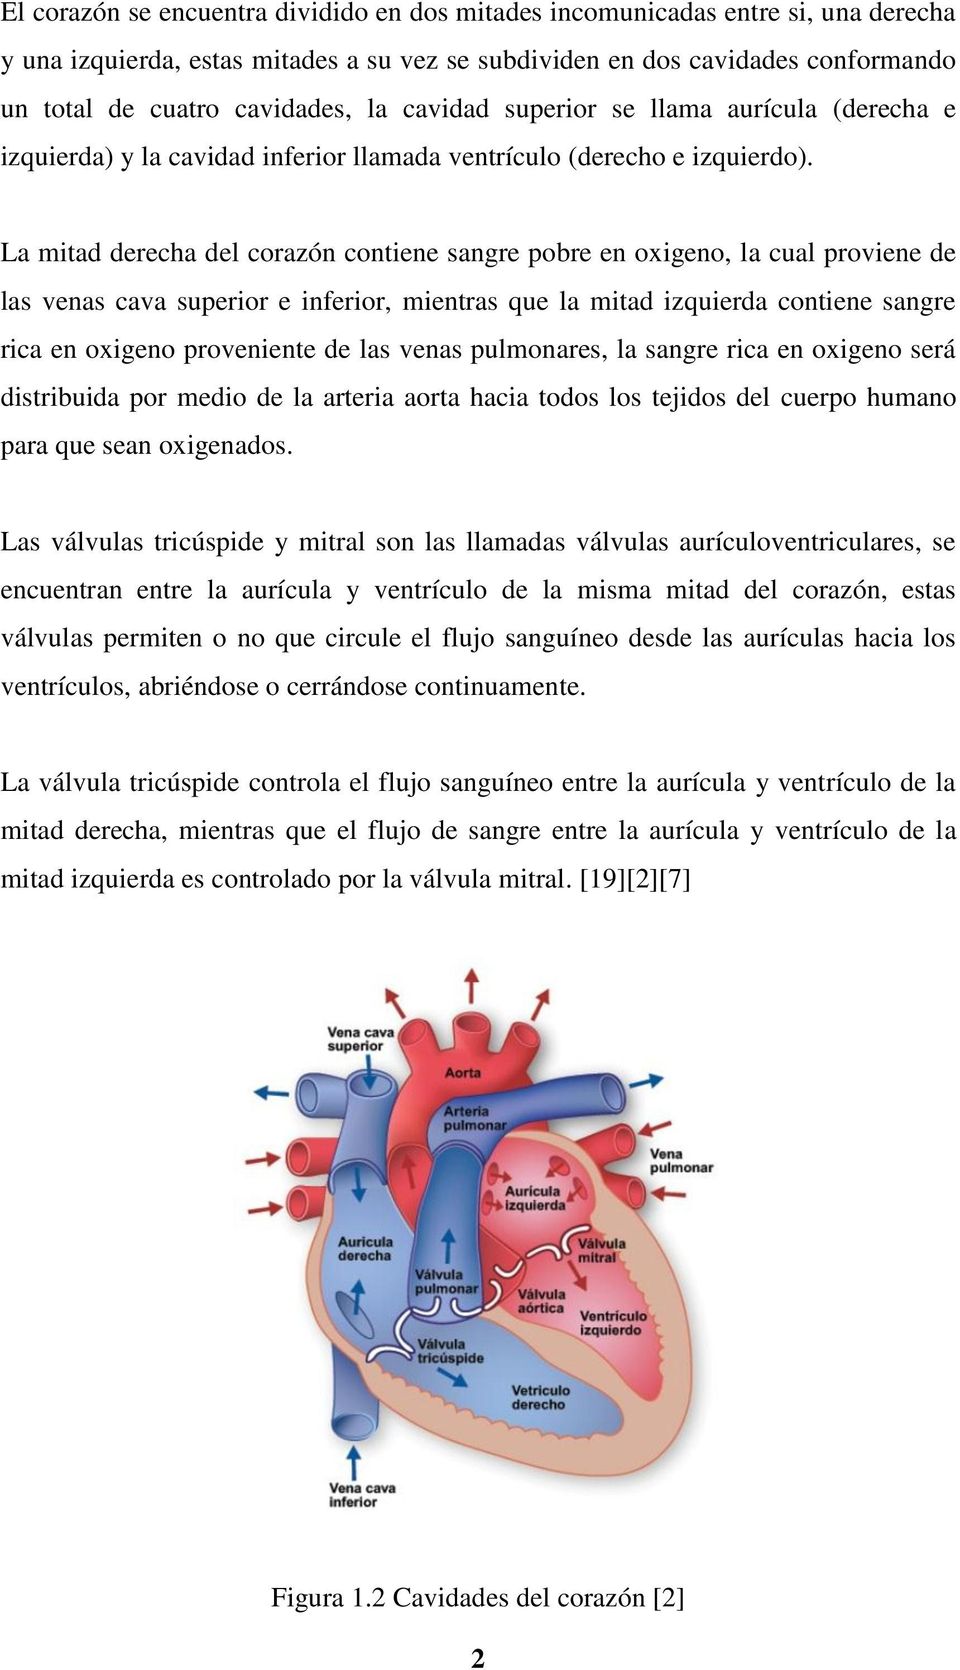 La mitad derecha del corazón contiene sangre pobre en oxigeno, la cual proviene de las venas cava superior e inferior, mientras que la mitad izquierda contiene sangre rica en oxigeno proveniente de